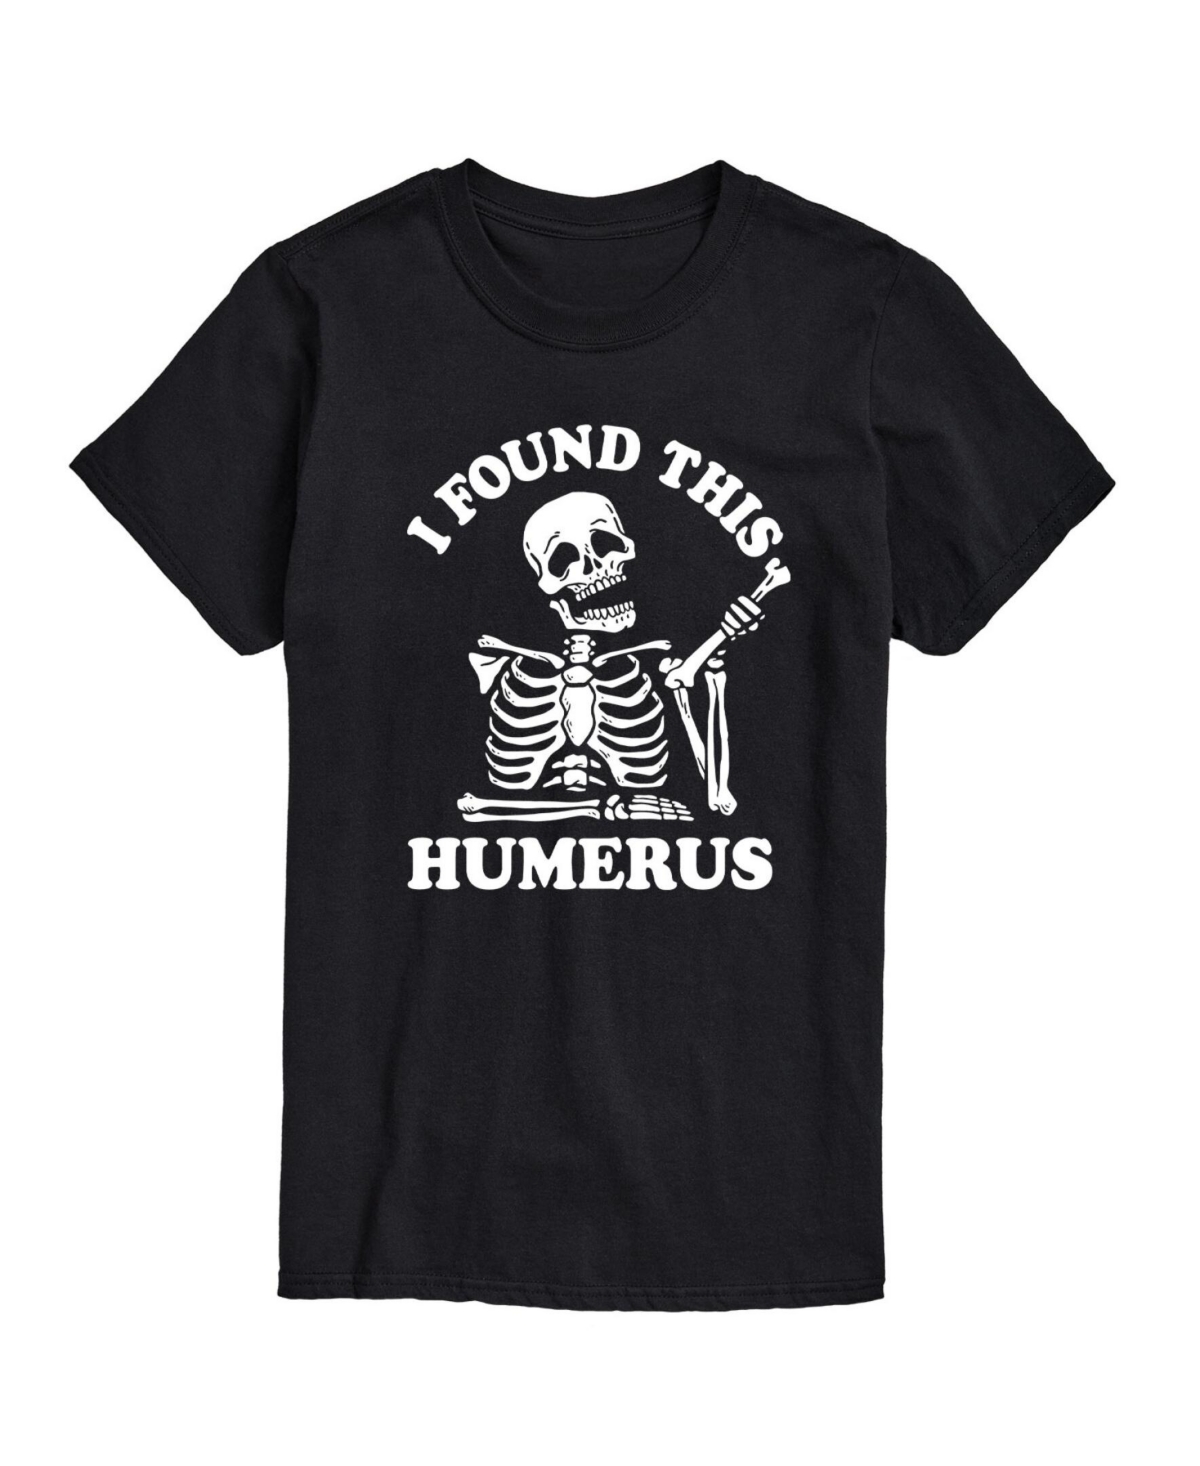 Men's Funny Skeleton Short Sleeve T-shirt - Black